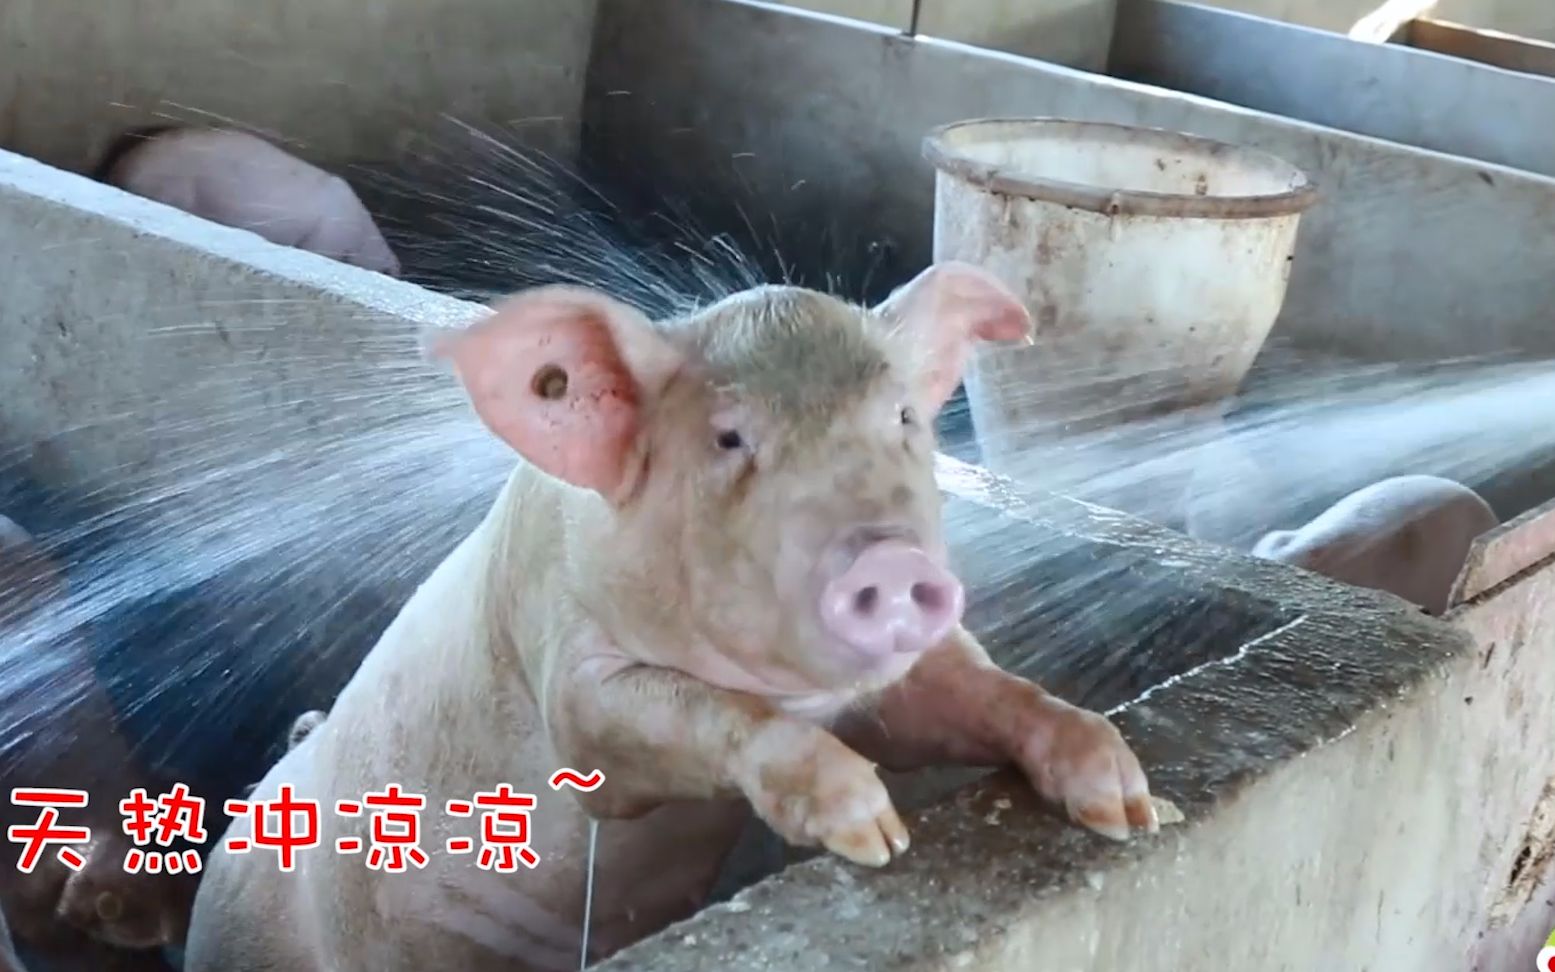 小乔给猪洗澡冲凉,意外发现一只不一样的猪,太神奇了!